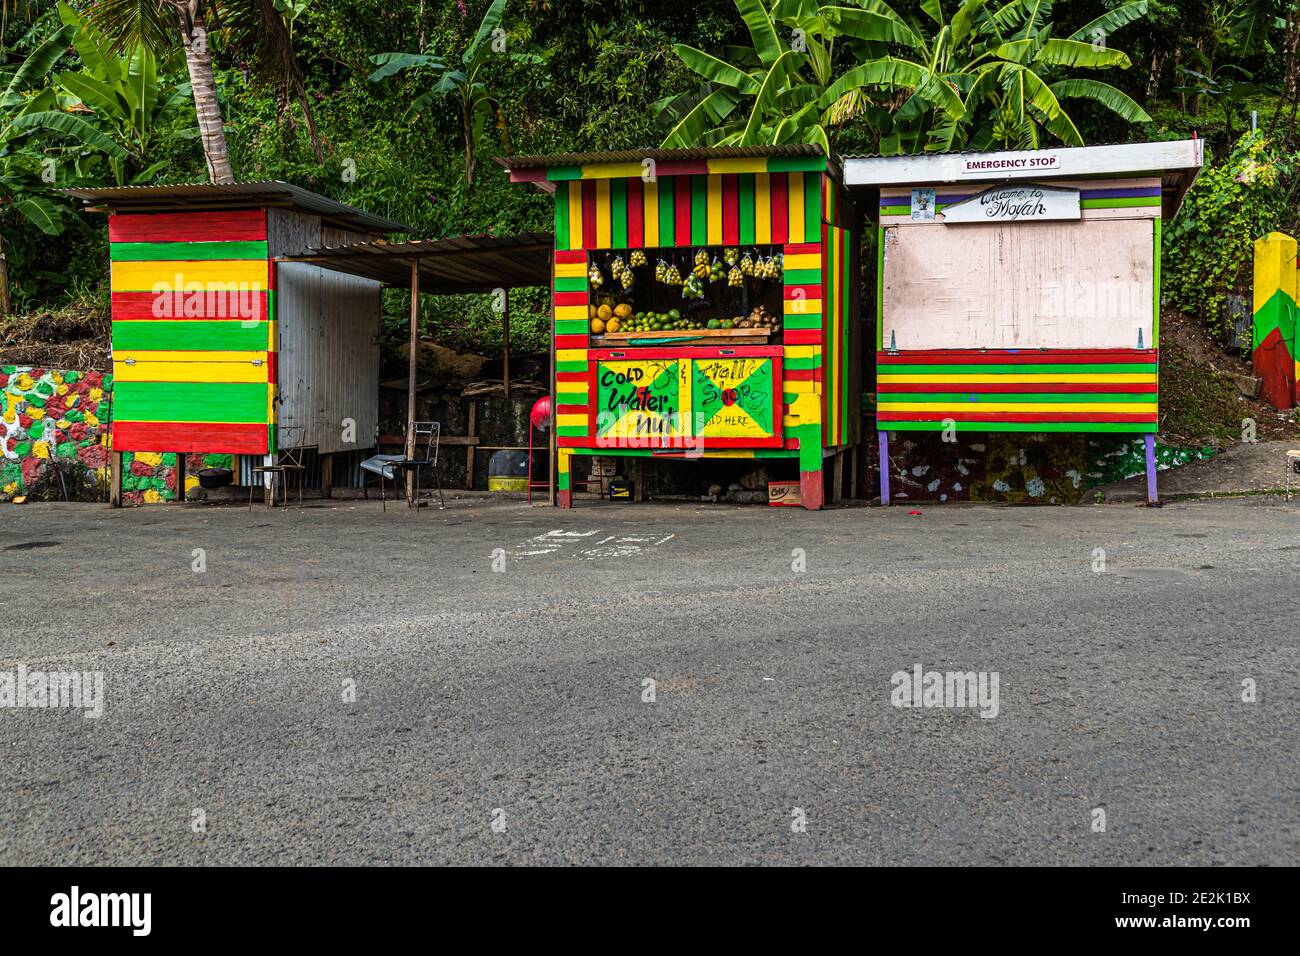 Kiosk selling Water Nuts in Moya, Grenada Stock Photo